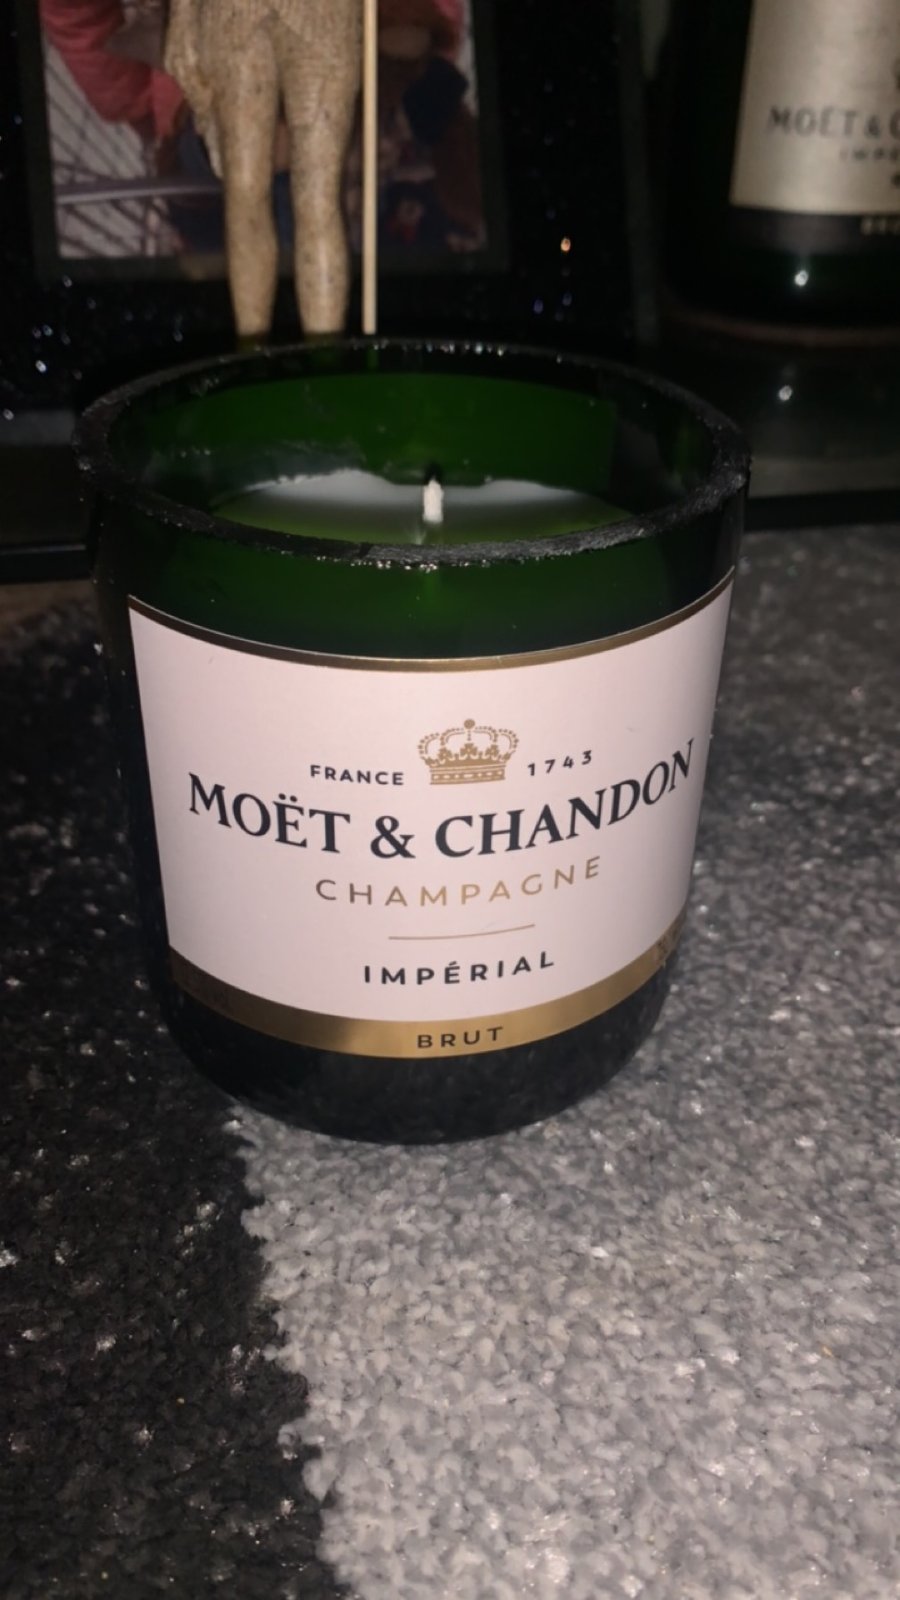 Moët champagne bottle candle